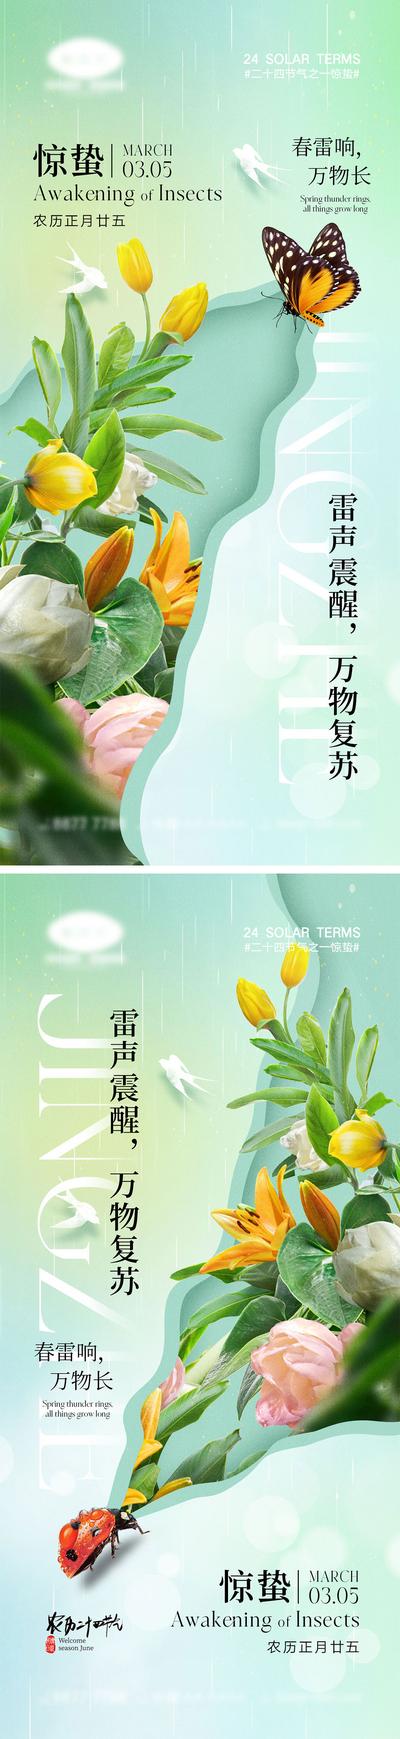 南门网 海报 地产 中式 二十四节气 立春 雨水 惊蛰 春分 下雨 虫子 春天 花朵 小鸟 燕子 桃花